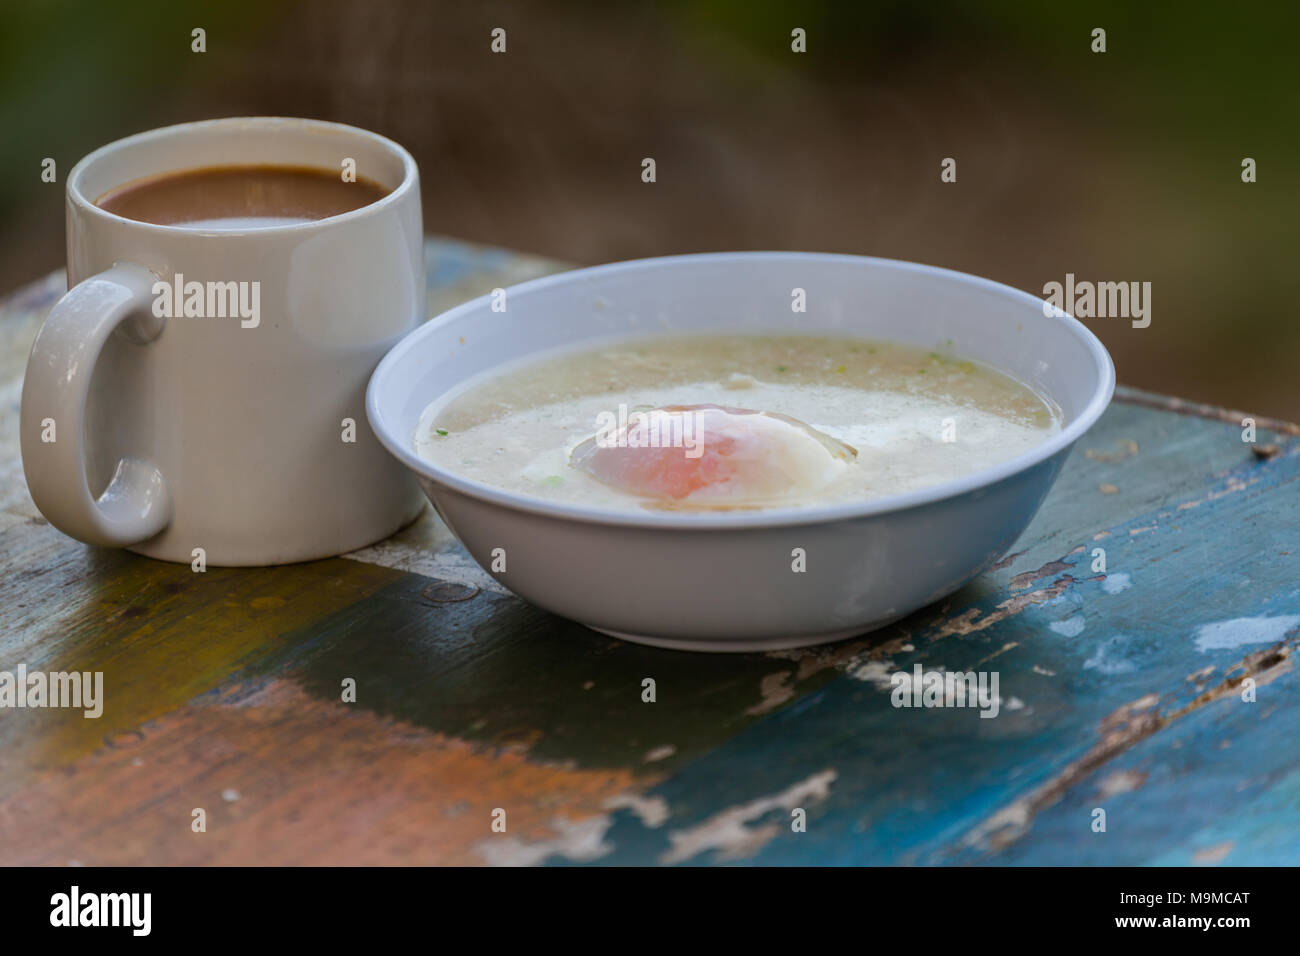 La cuisson d'aliments de préparation rapide facile d'un simple œuf de porridge et de café chaud pour le petit déjeuner Banque D'Images